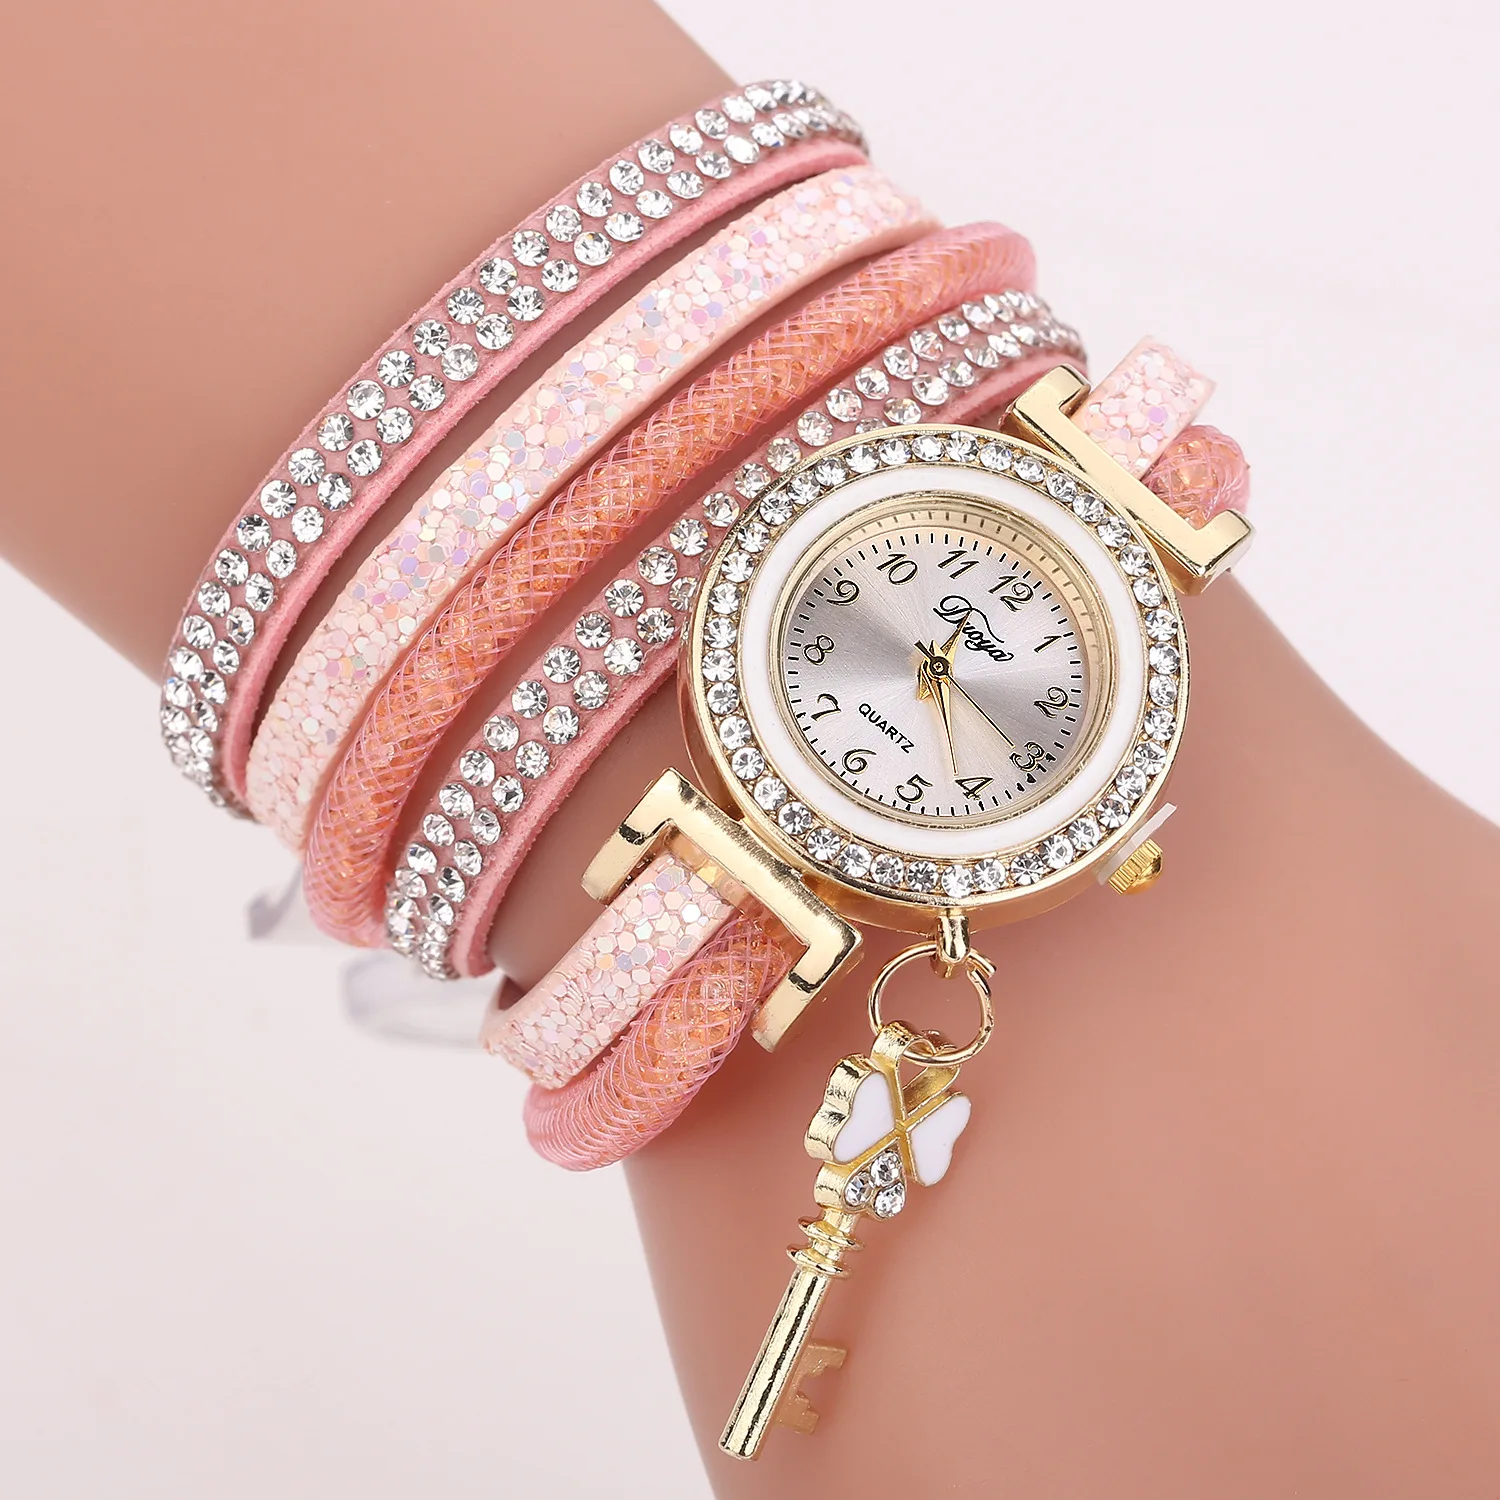 

reloj brazalete pulsera para mujer regalo mama piel vinil cristal Dije de llave antigua Casual, Variable